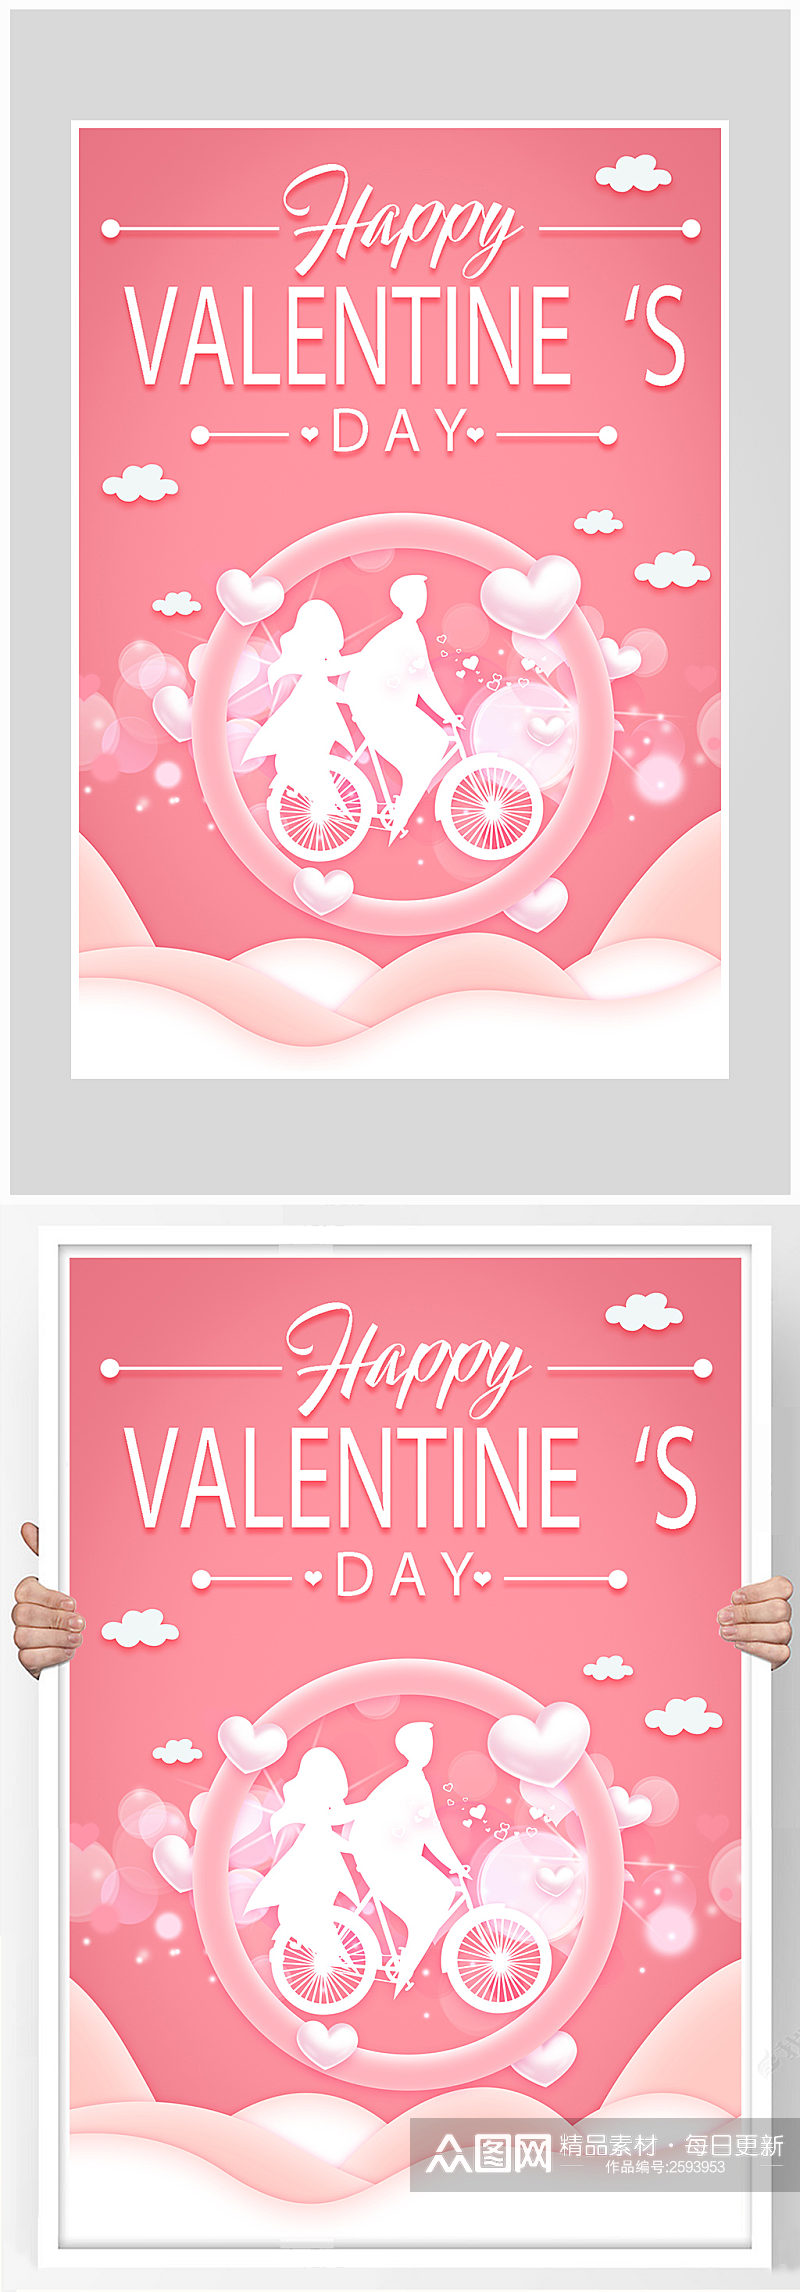 唯美粉色浪漫情人节海报设计素材